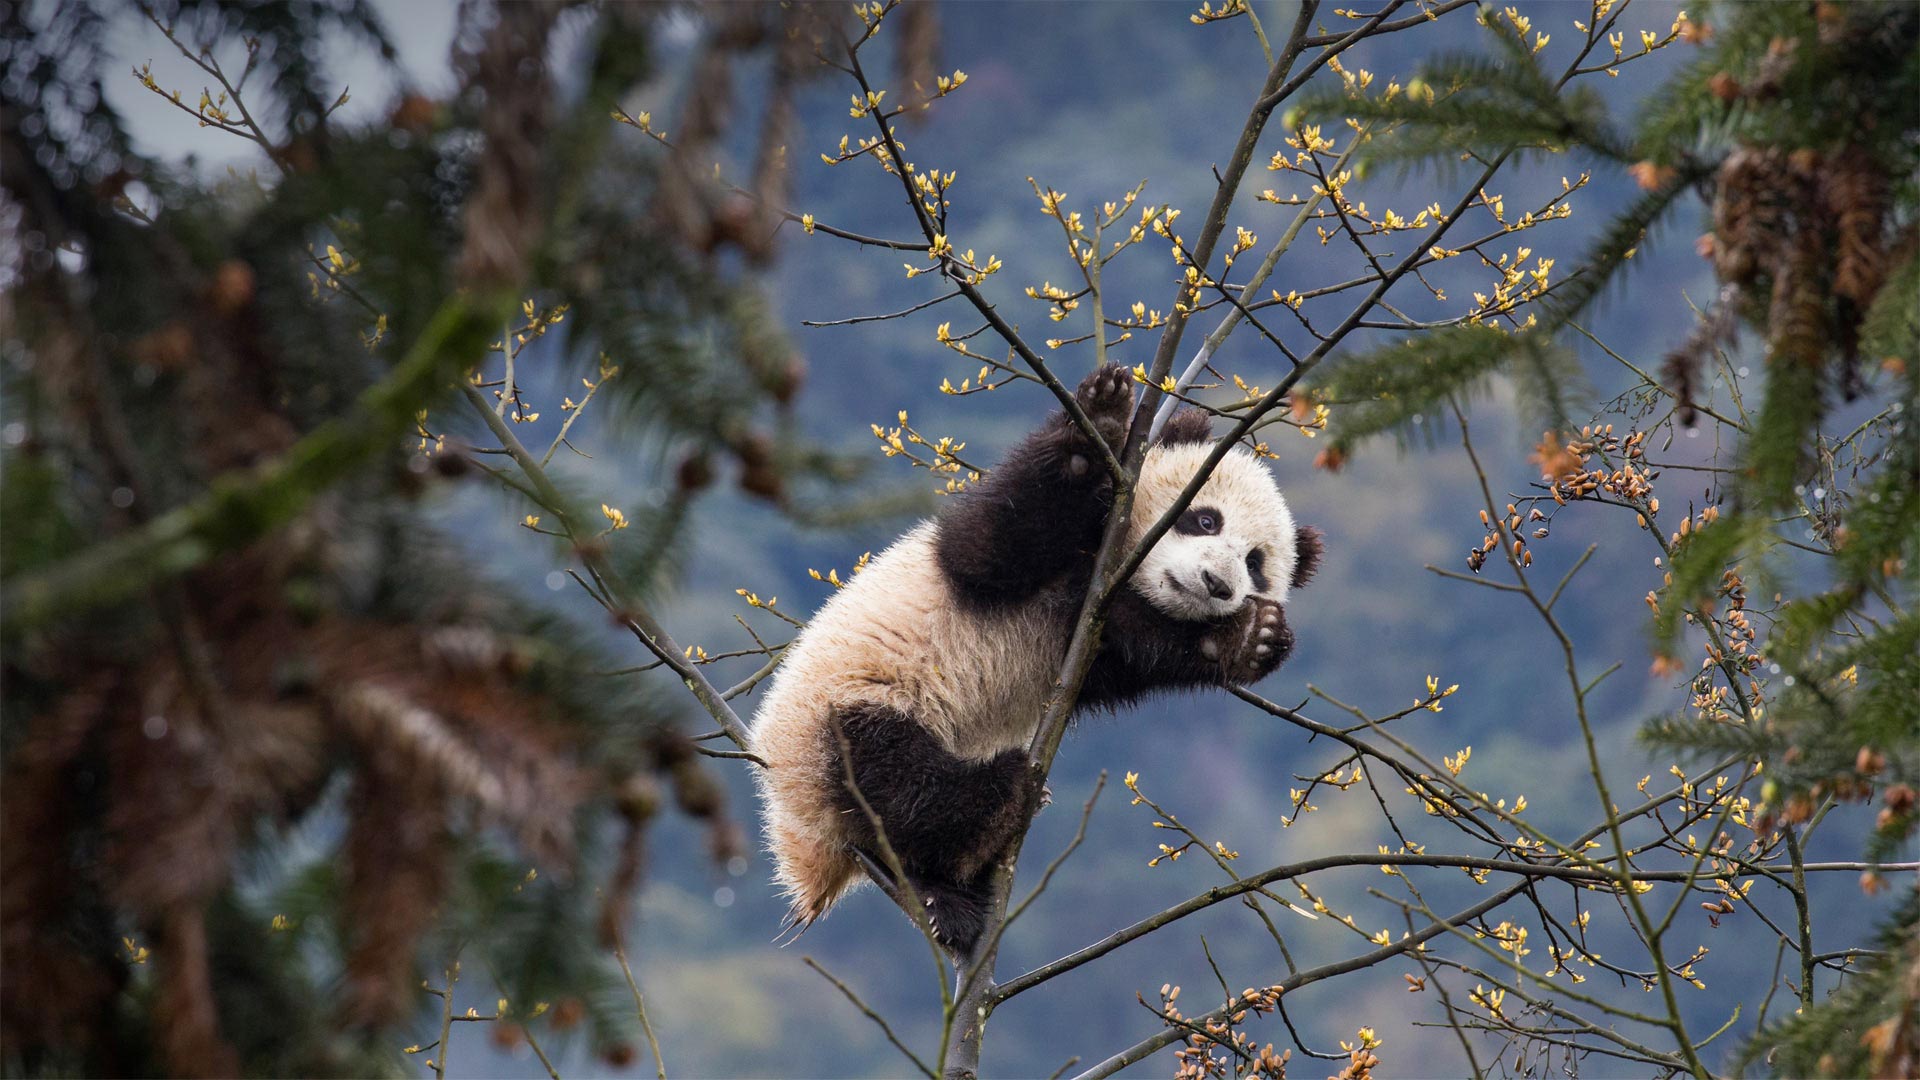 Giant panda cub at Bifengxia Panda Base, Sichuan, China - Suzi Eszterhas